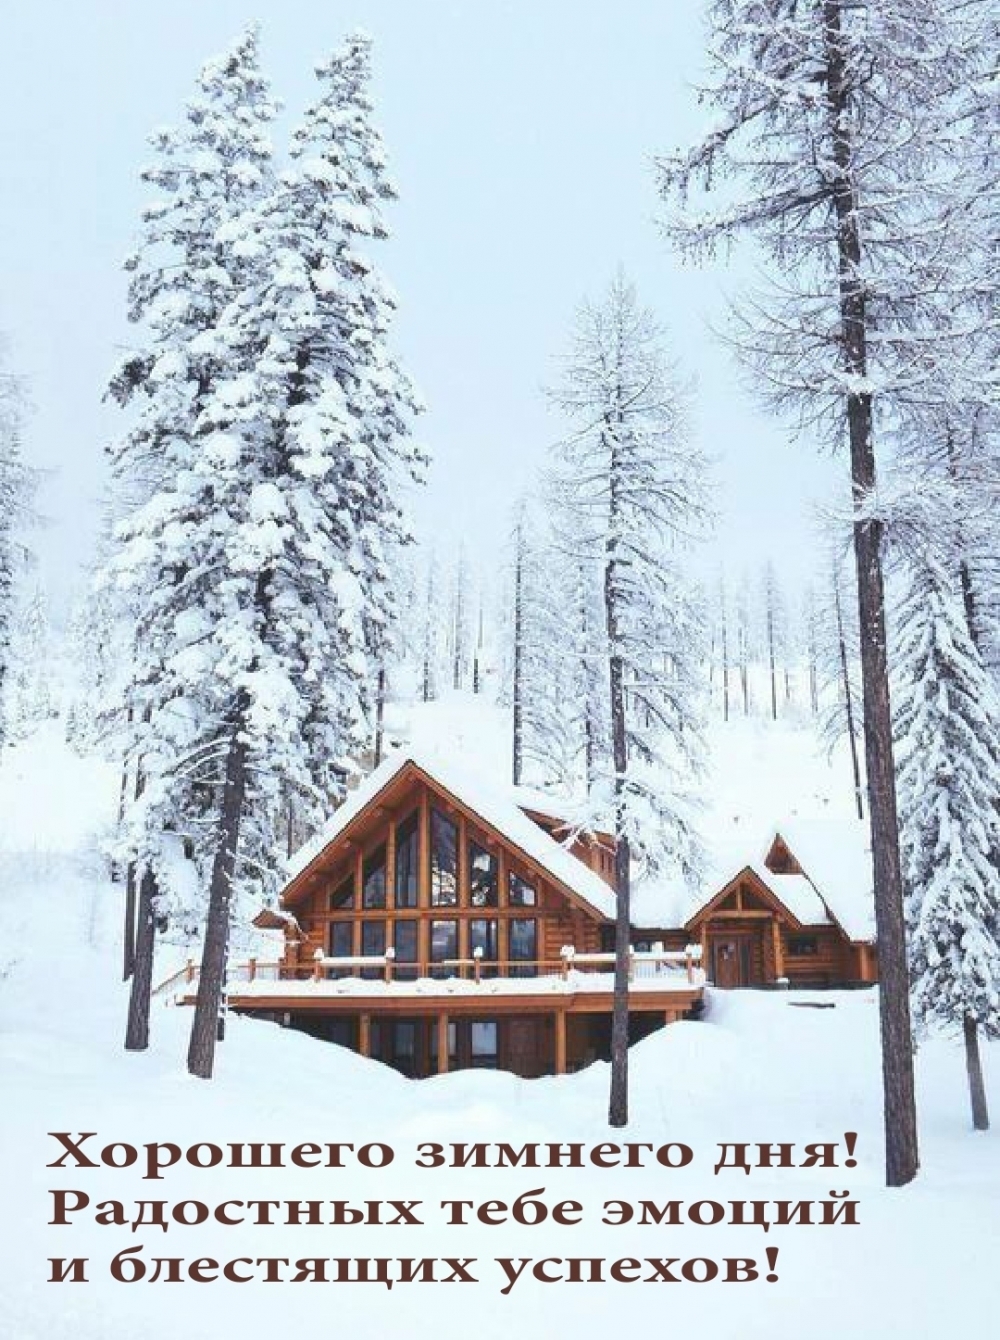 Прелестная открытка хорошего зимнего дня